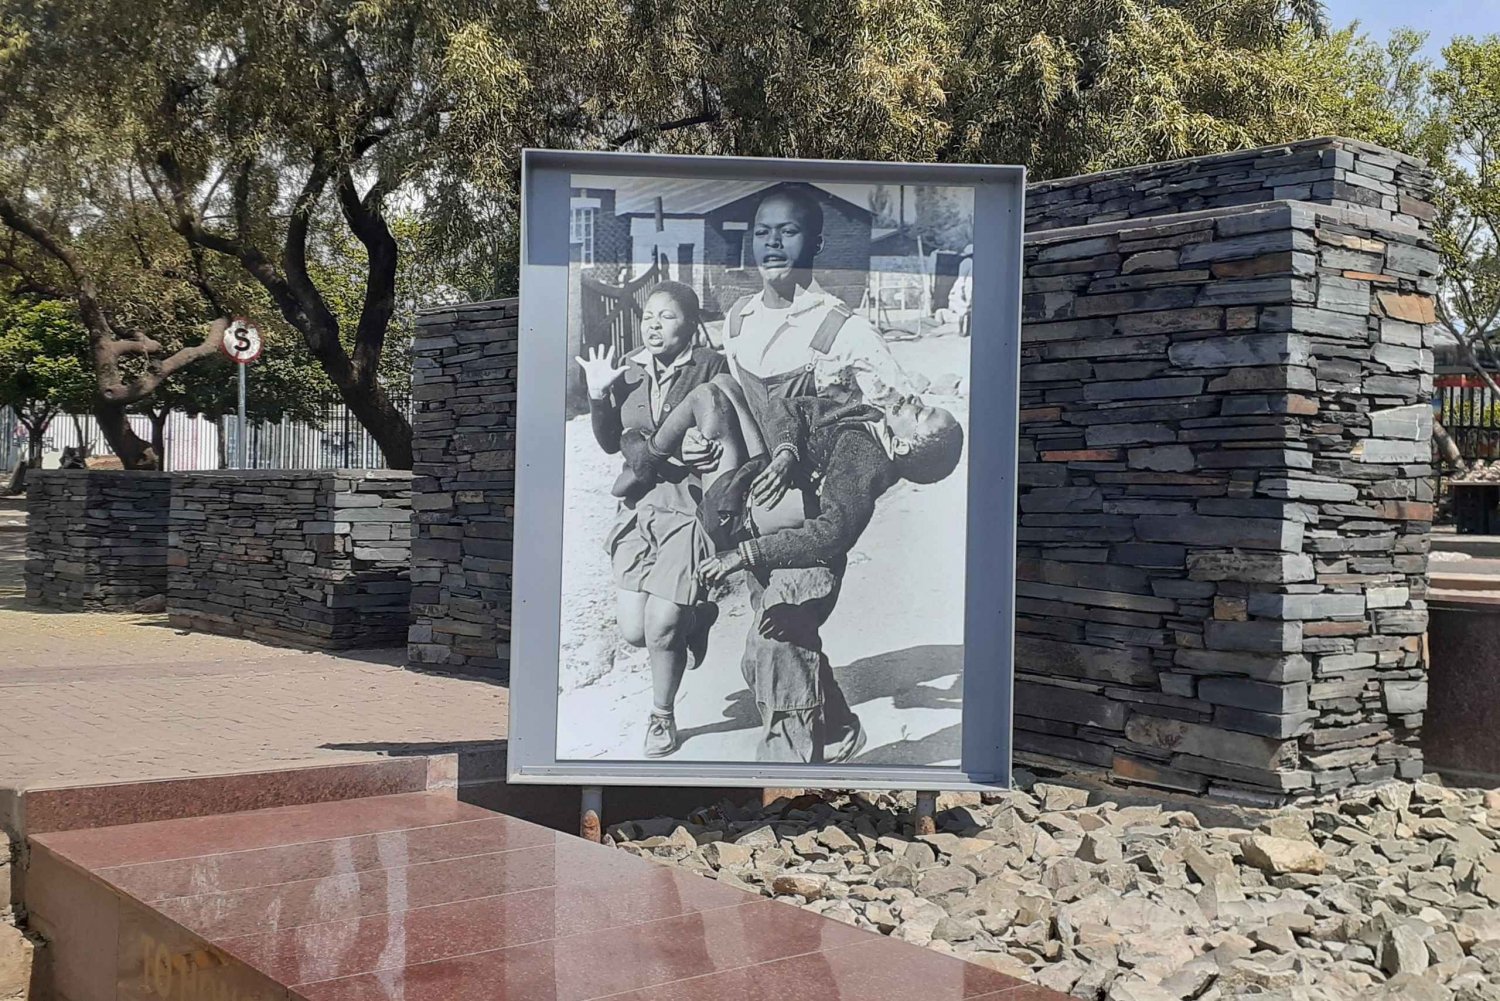 Visita al museo de Soweto y el apartheid (media jornada)